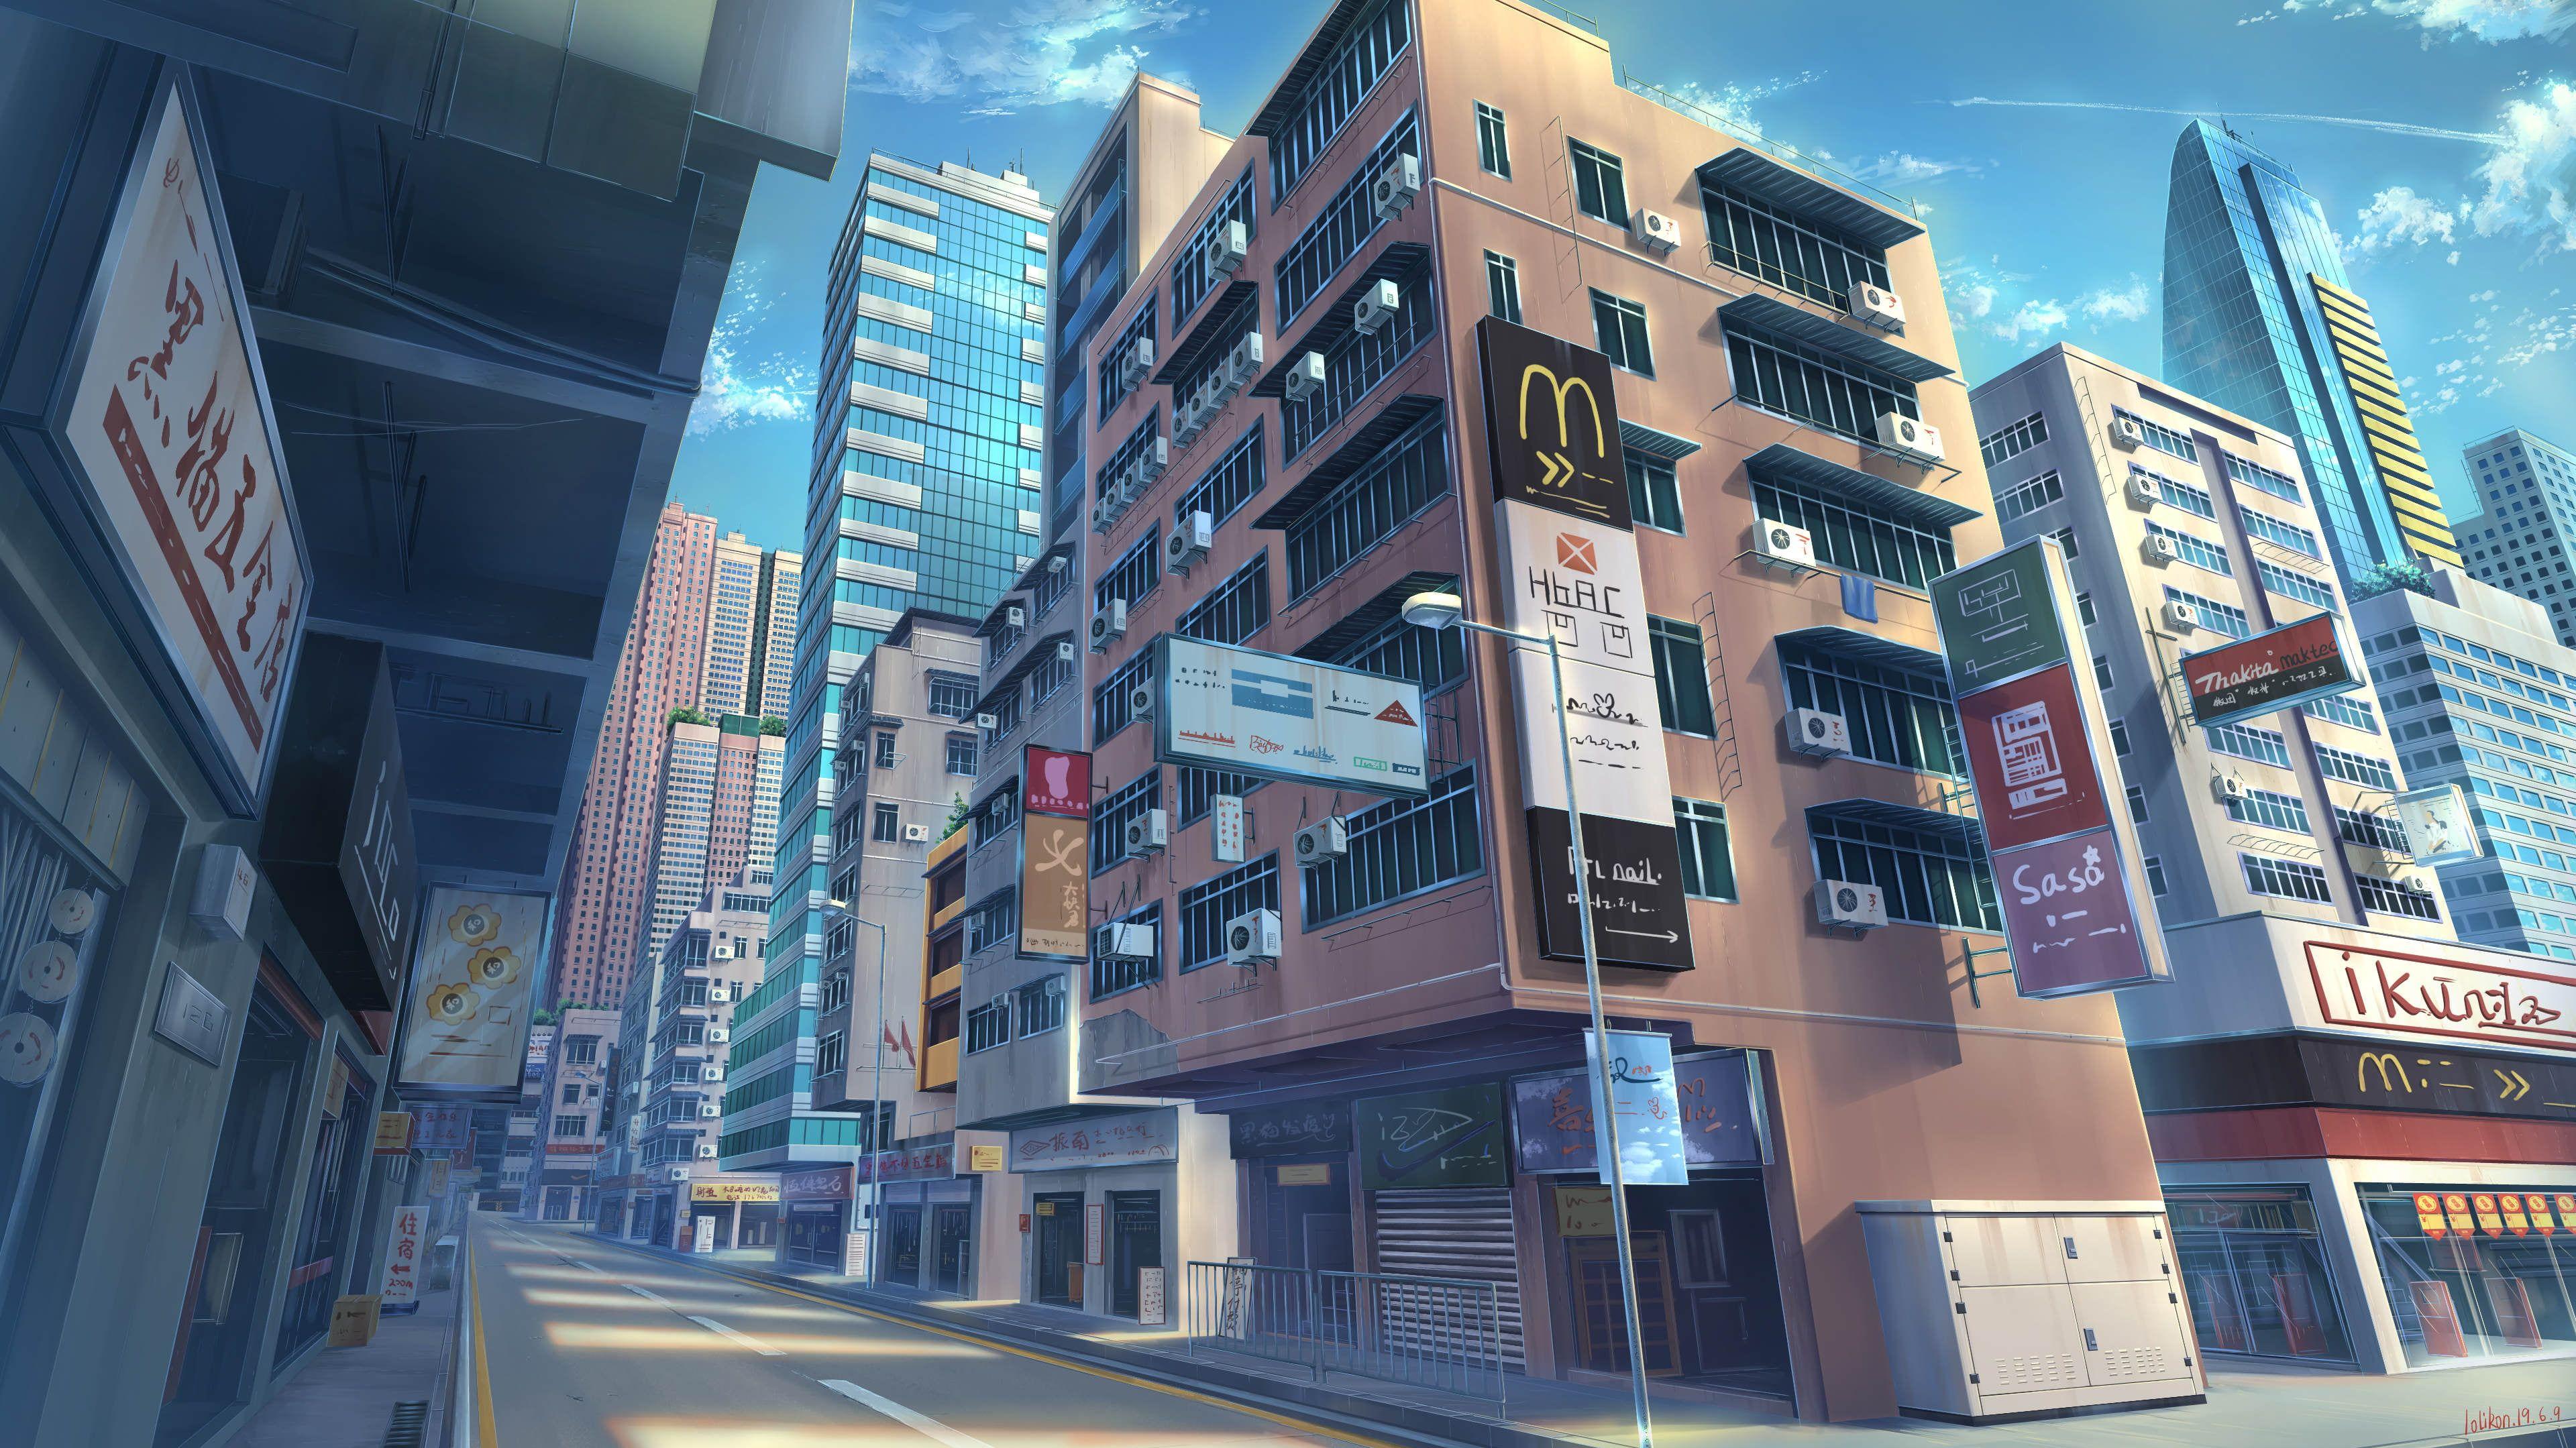 Tòa nhà anime đường phố gốc Anime thật sự là một điểm đến không thể bỏ qua với các fan anime. Hãy cùng chiêm ngưỡng ngôi nhà được thiết kế đầy tinh tế và lạ mắt này, ngay trung tâm của đường phố anime tươi đẹp.